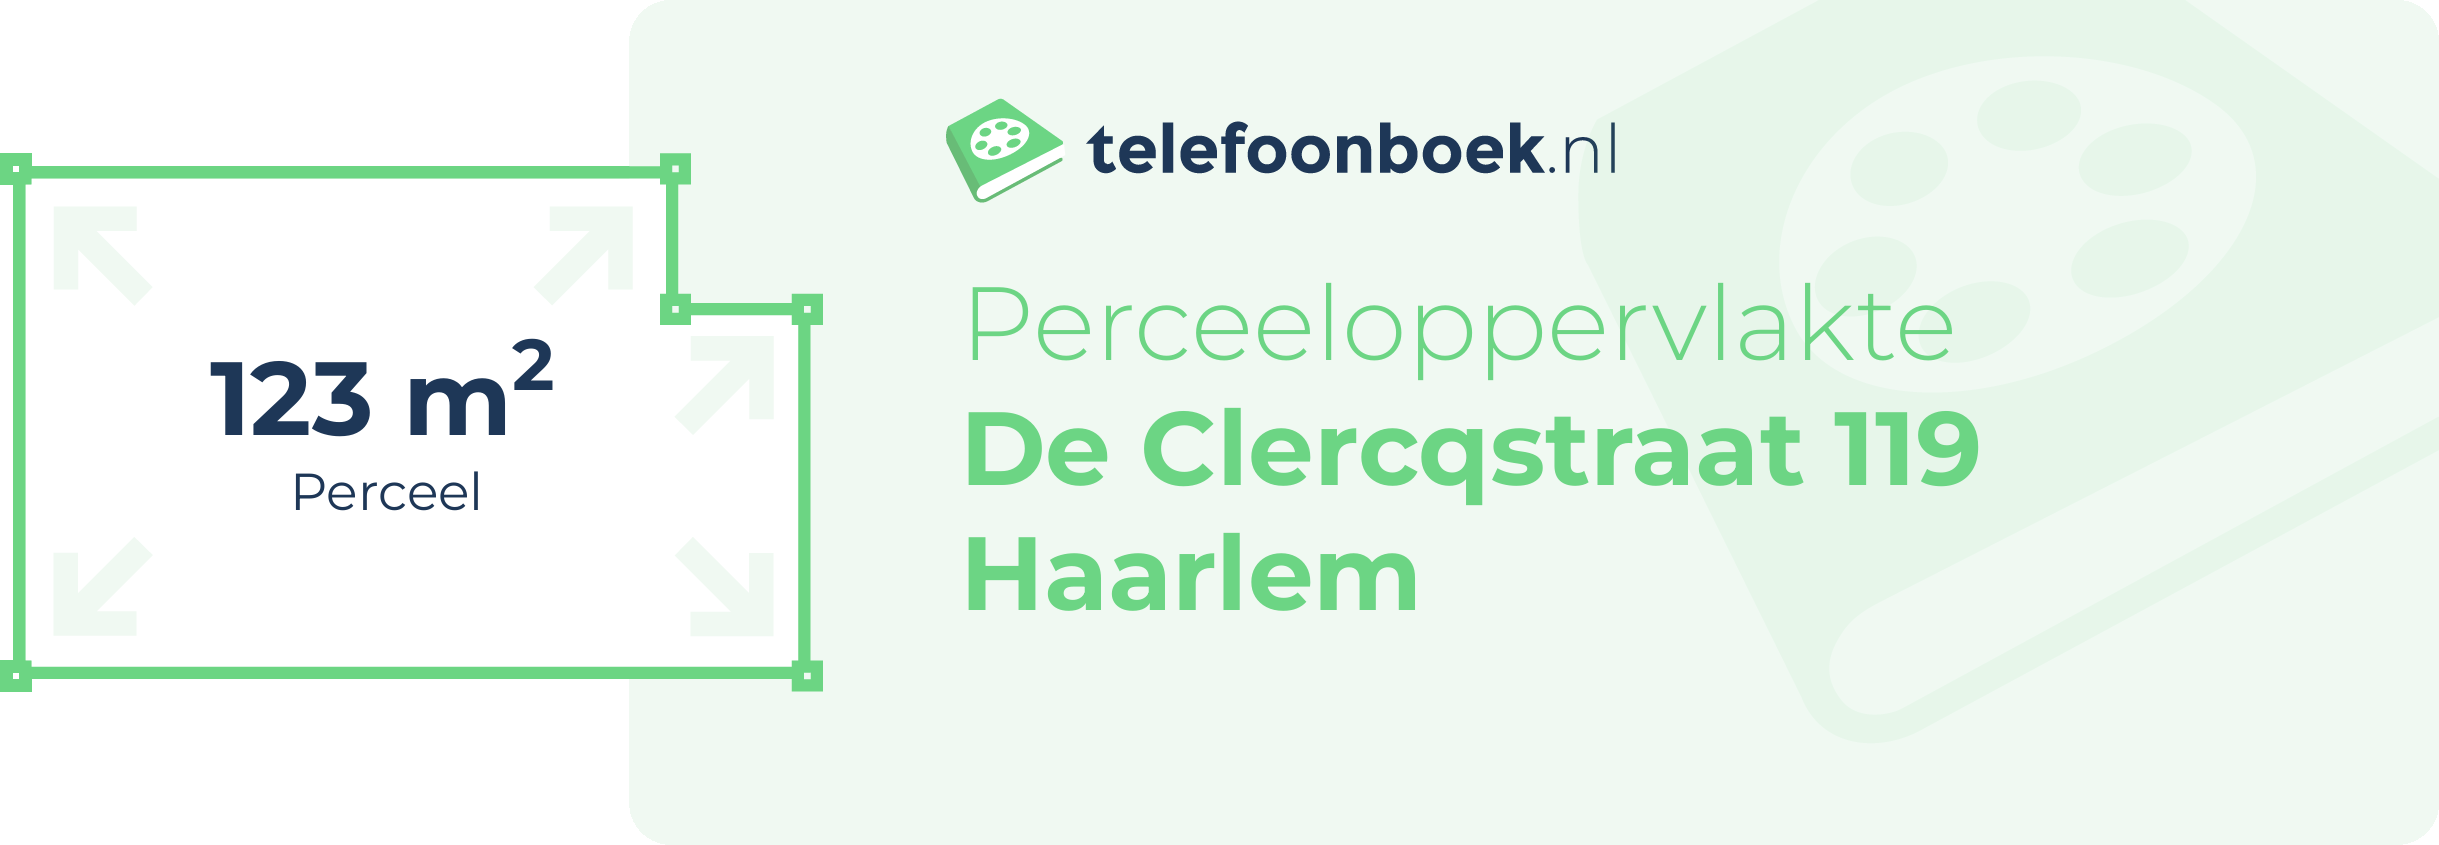 Perceeloppervlakte De Clercqstraat 119 Haarlem